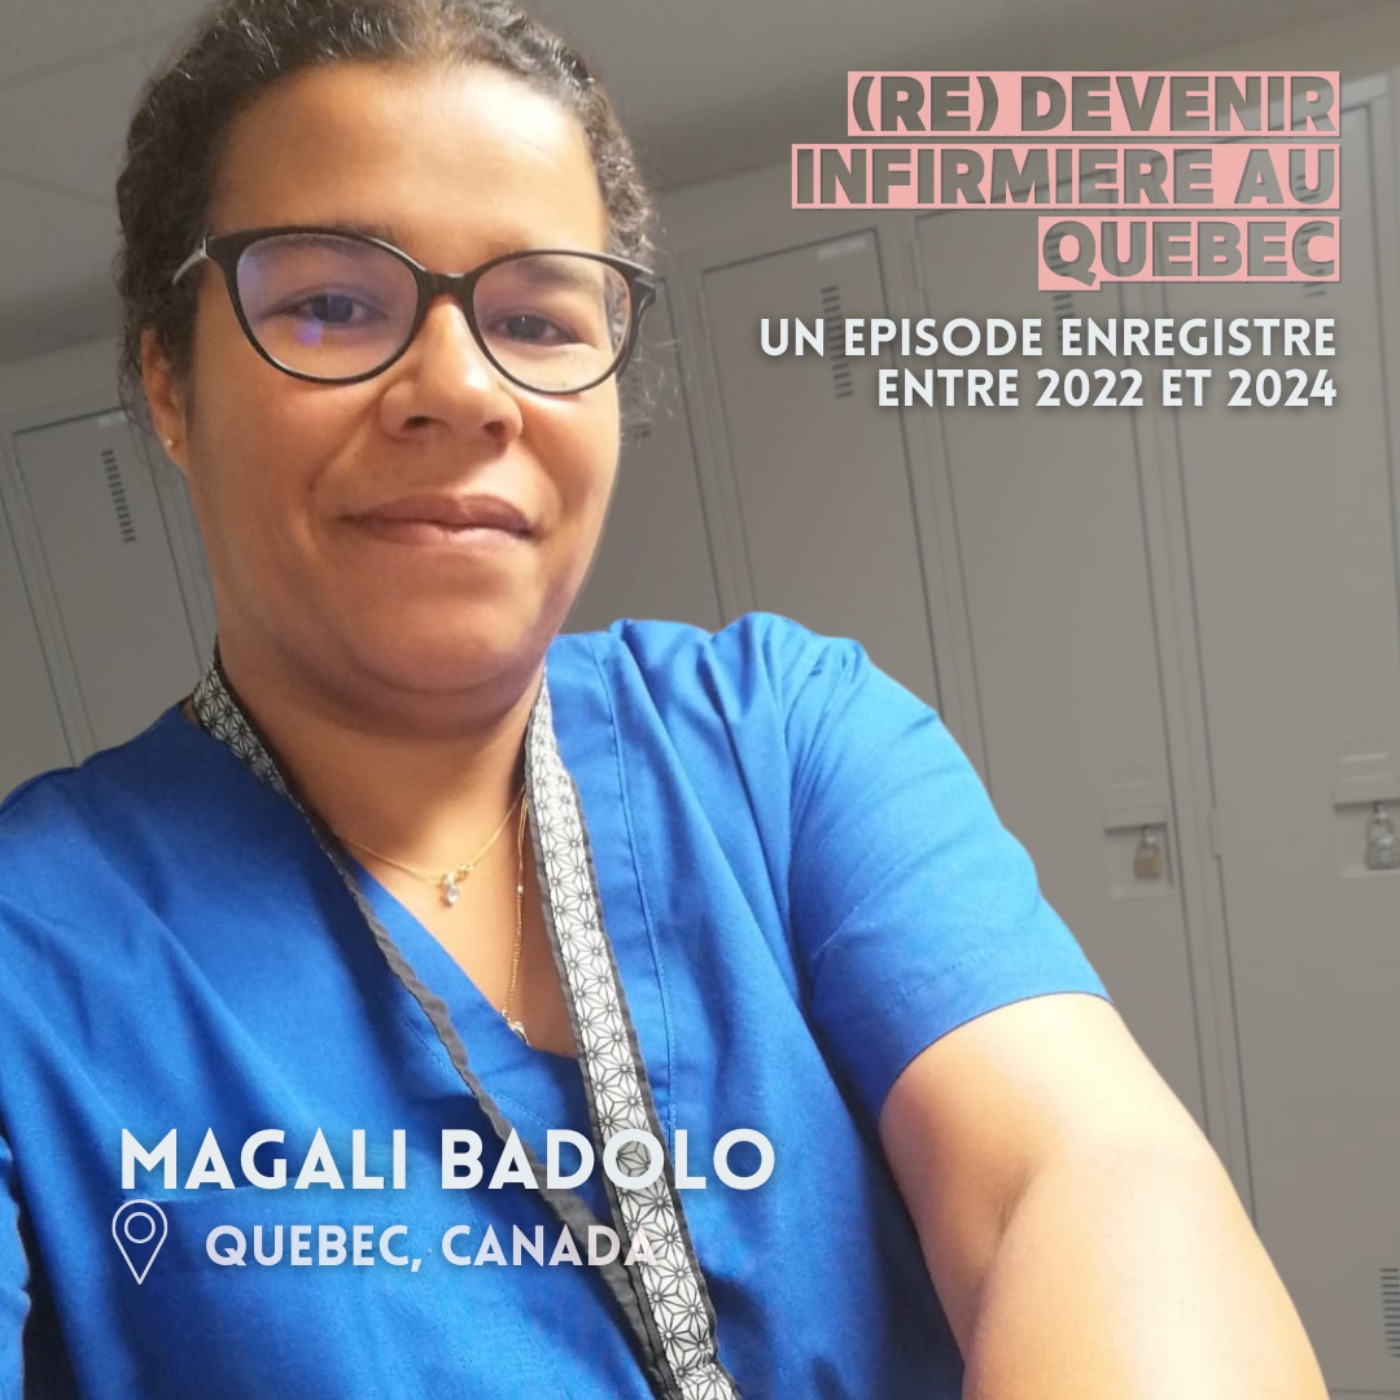 Magali Badolo (Quebec) : (re) devenir infirmière au Canada